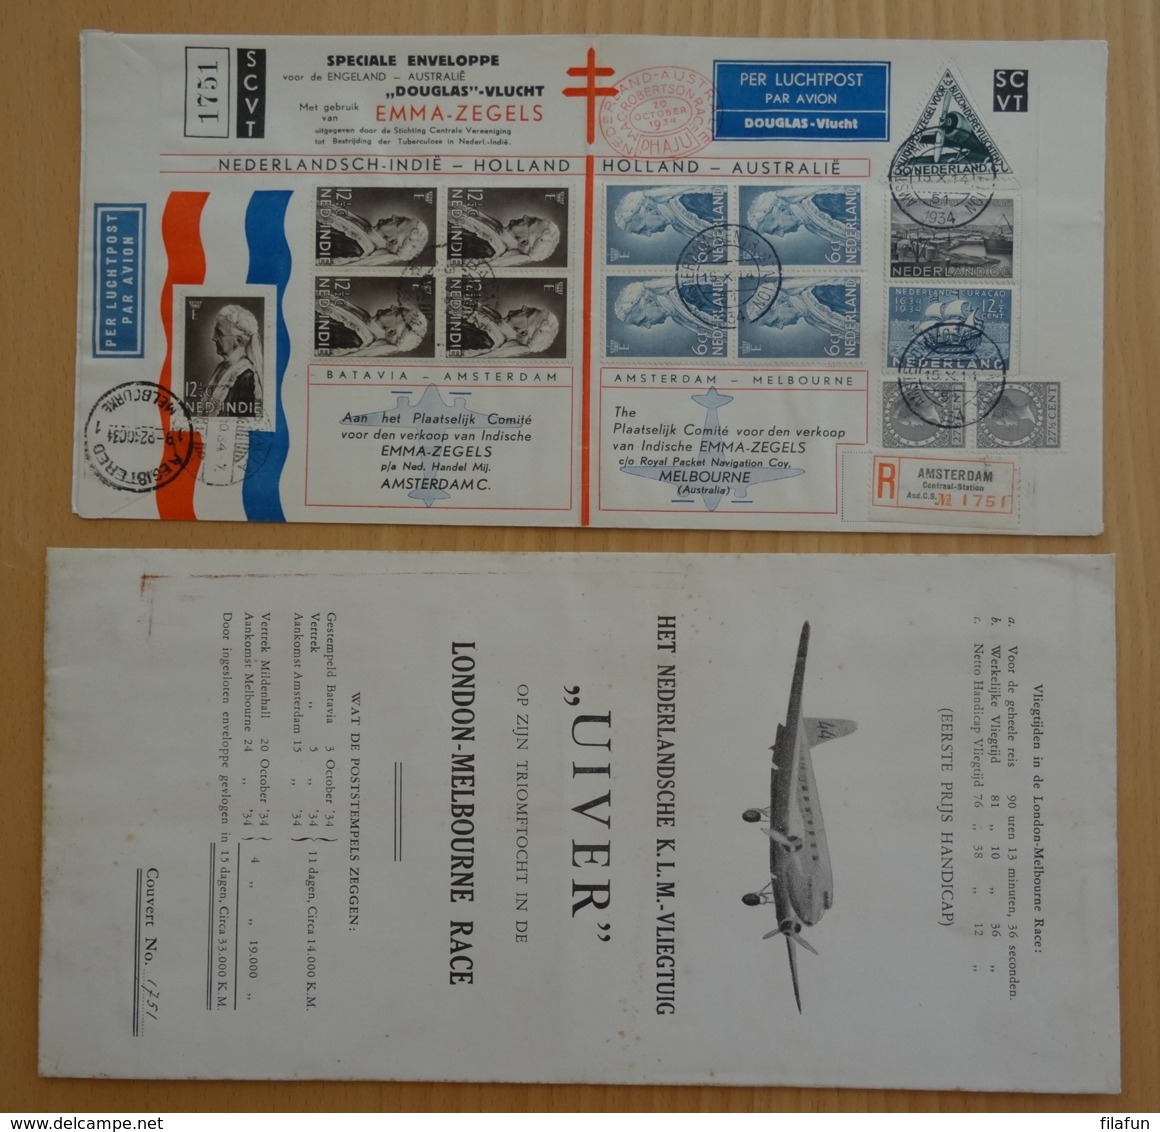 Nederlands Indië - 1934 - Uiver Envelop London-Melbourne Race - Uitgave SCVT Met Originele Uiver-hoes - Nummer 1751 - Niederländisch-Indien